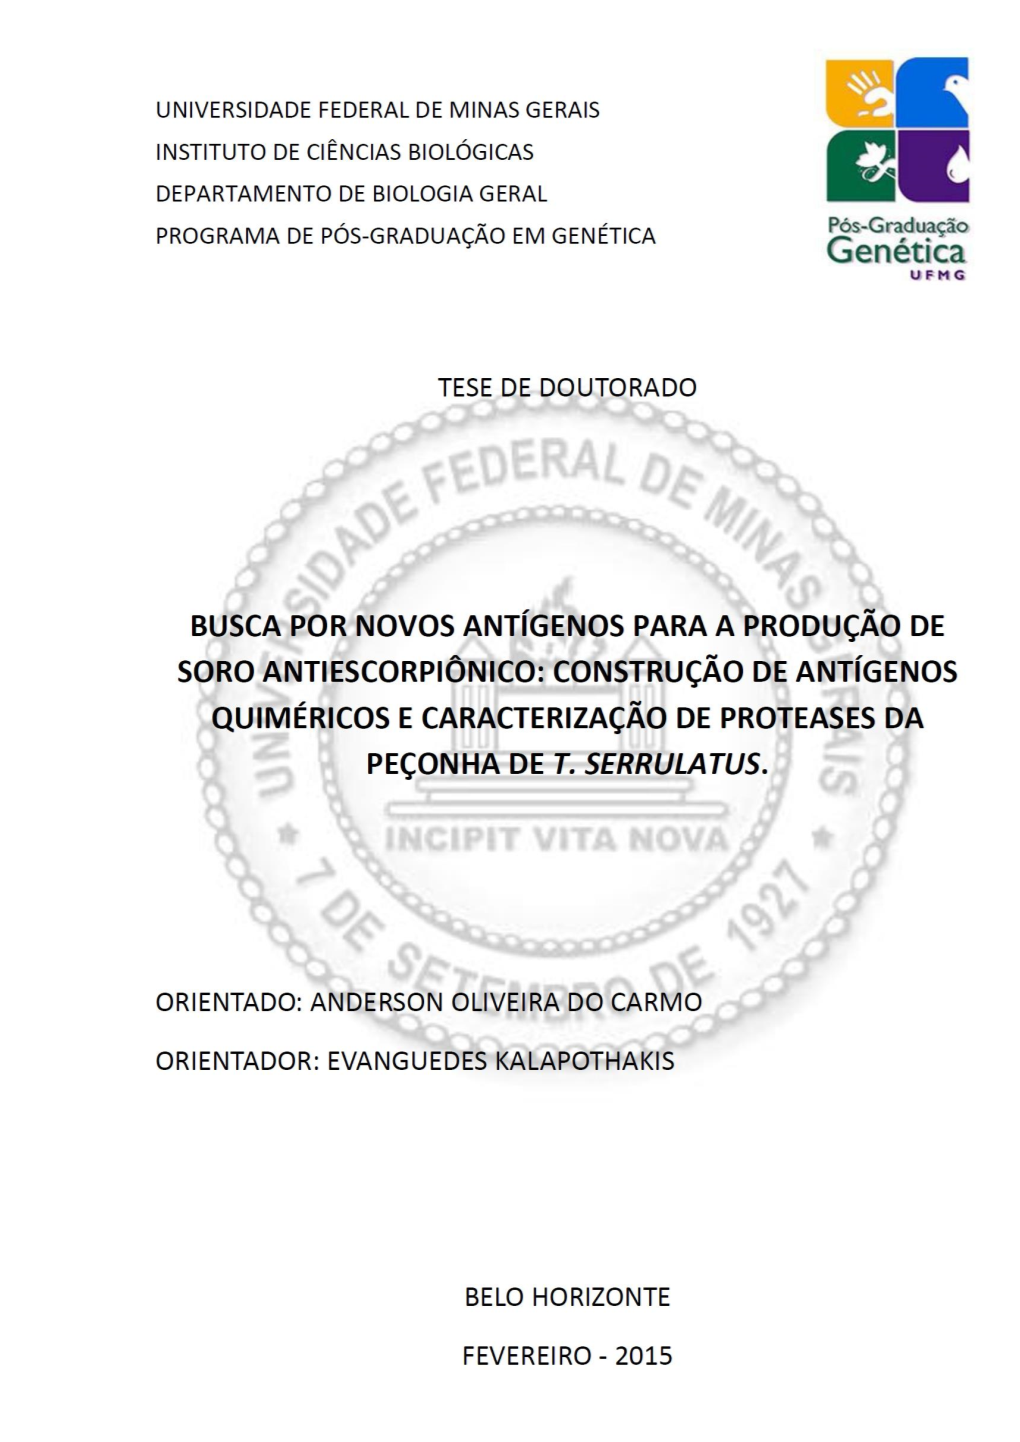 Anderson Oliveira Do Carmo Busca Por Novos Antígenos Para a Produção De Soro Antiescorpiônico